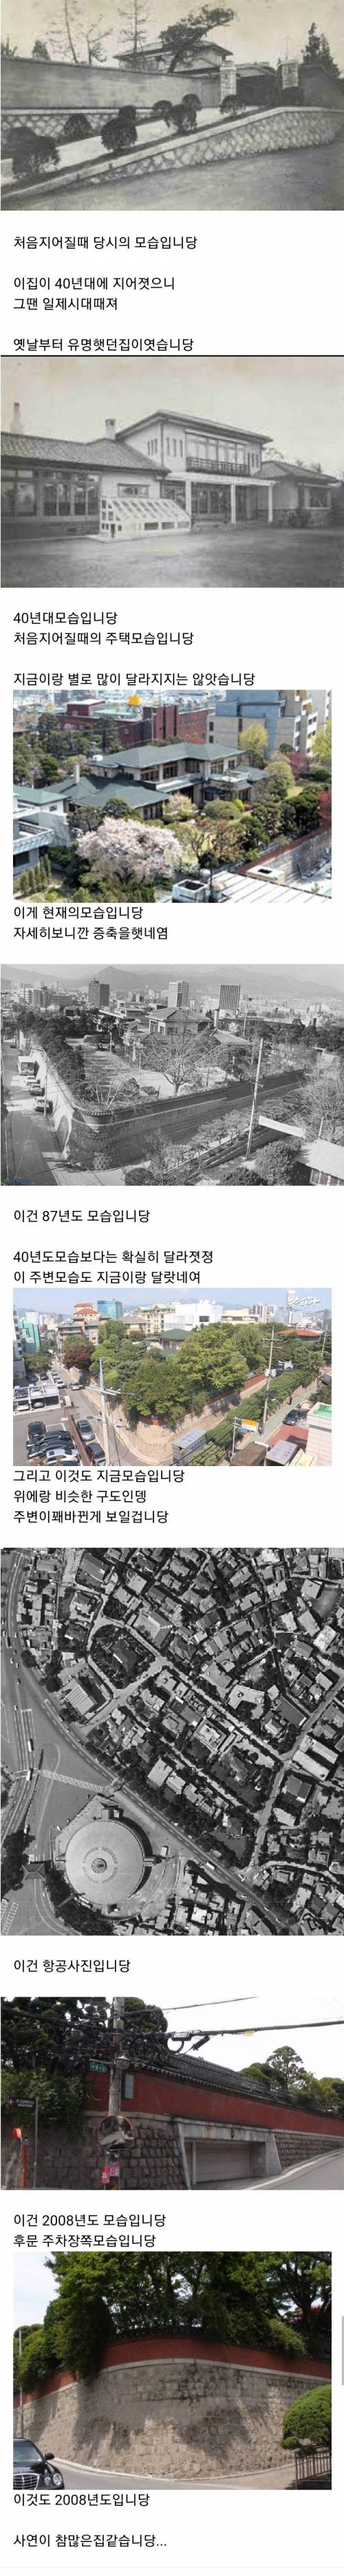 침수 될일 1도 걱정없는 대한민국 찐 부자 집 . jpg